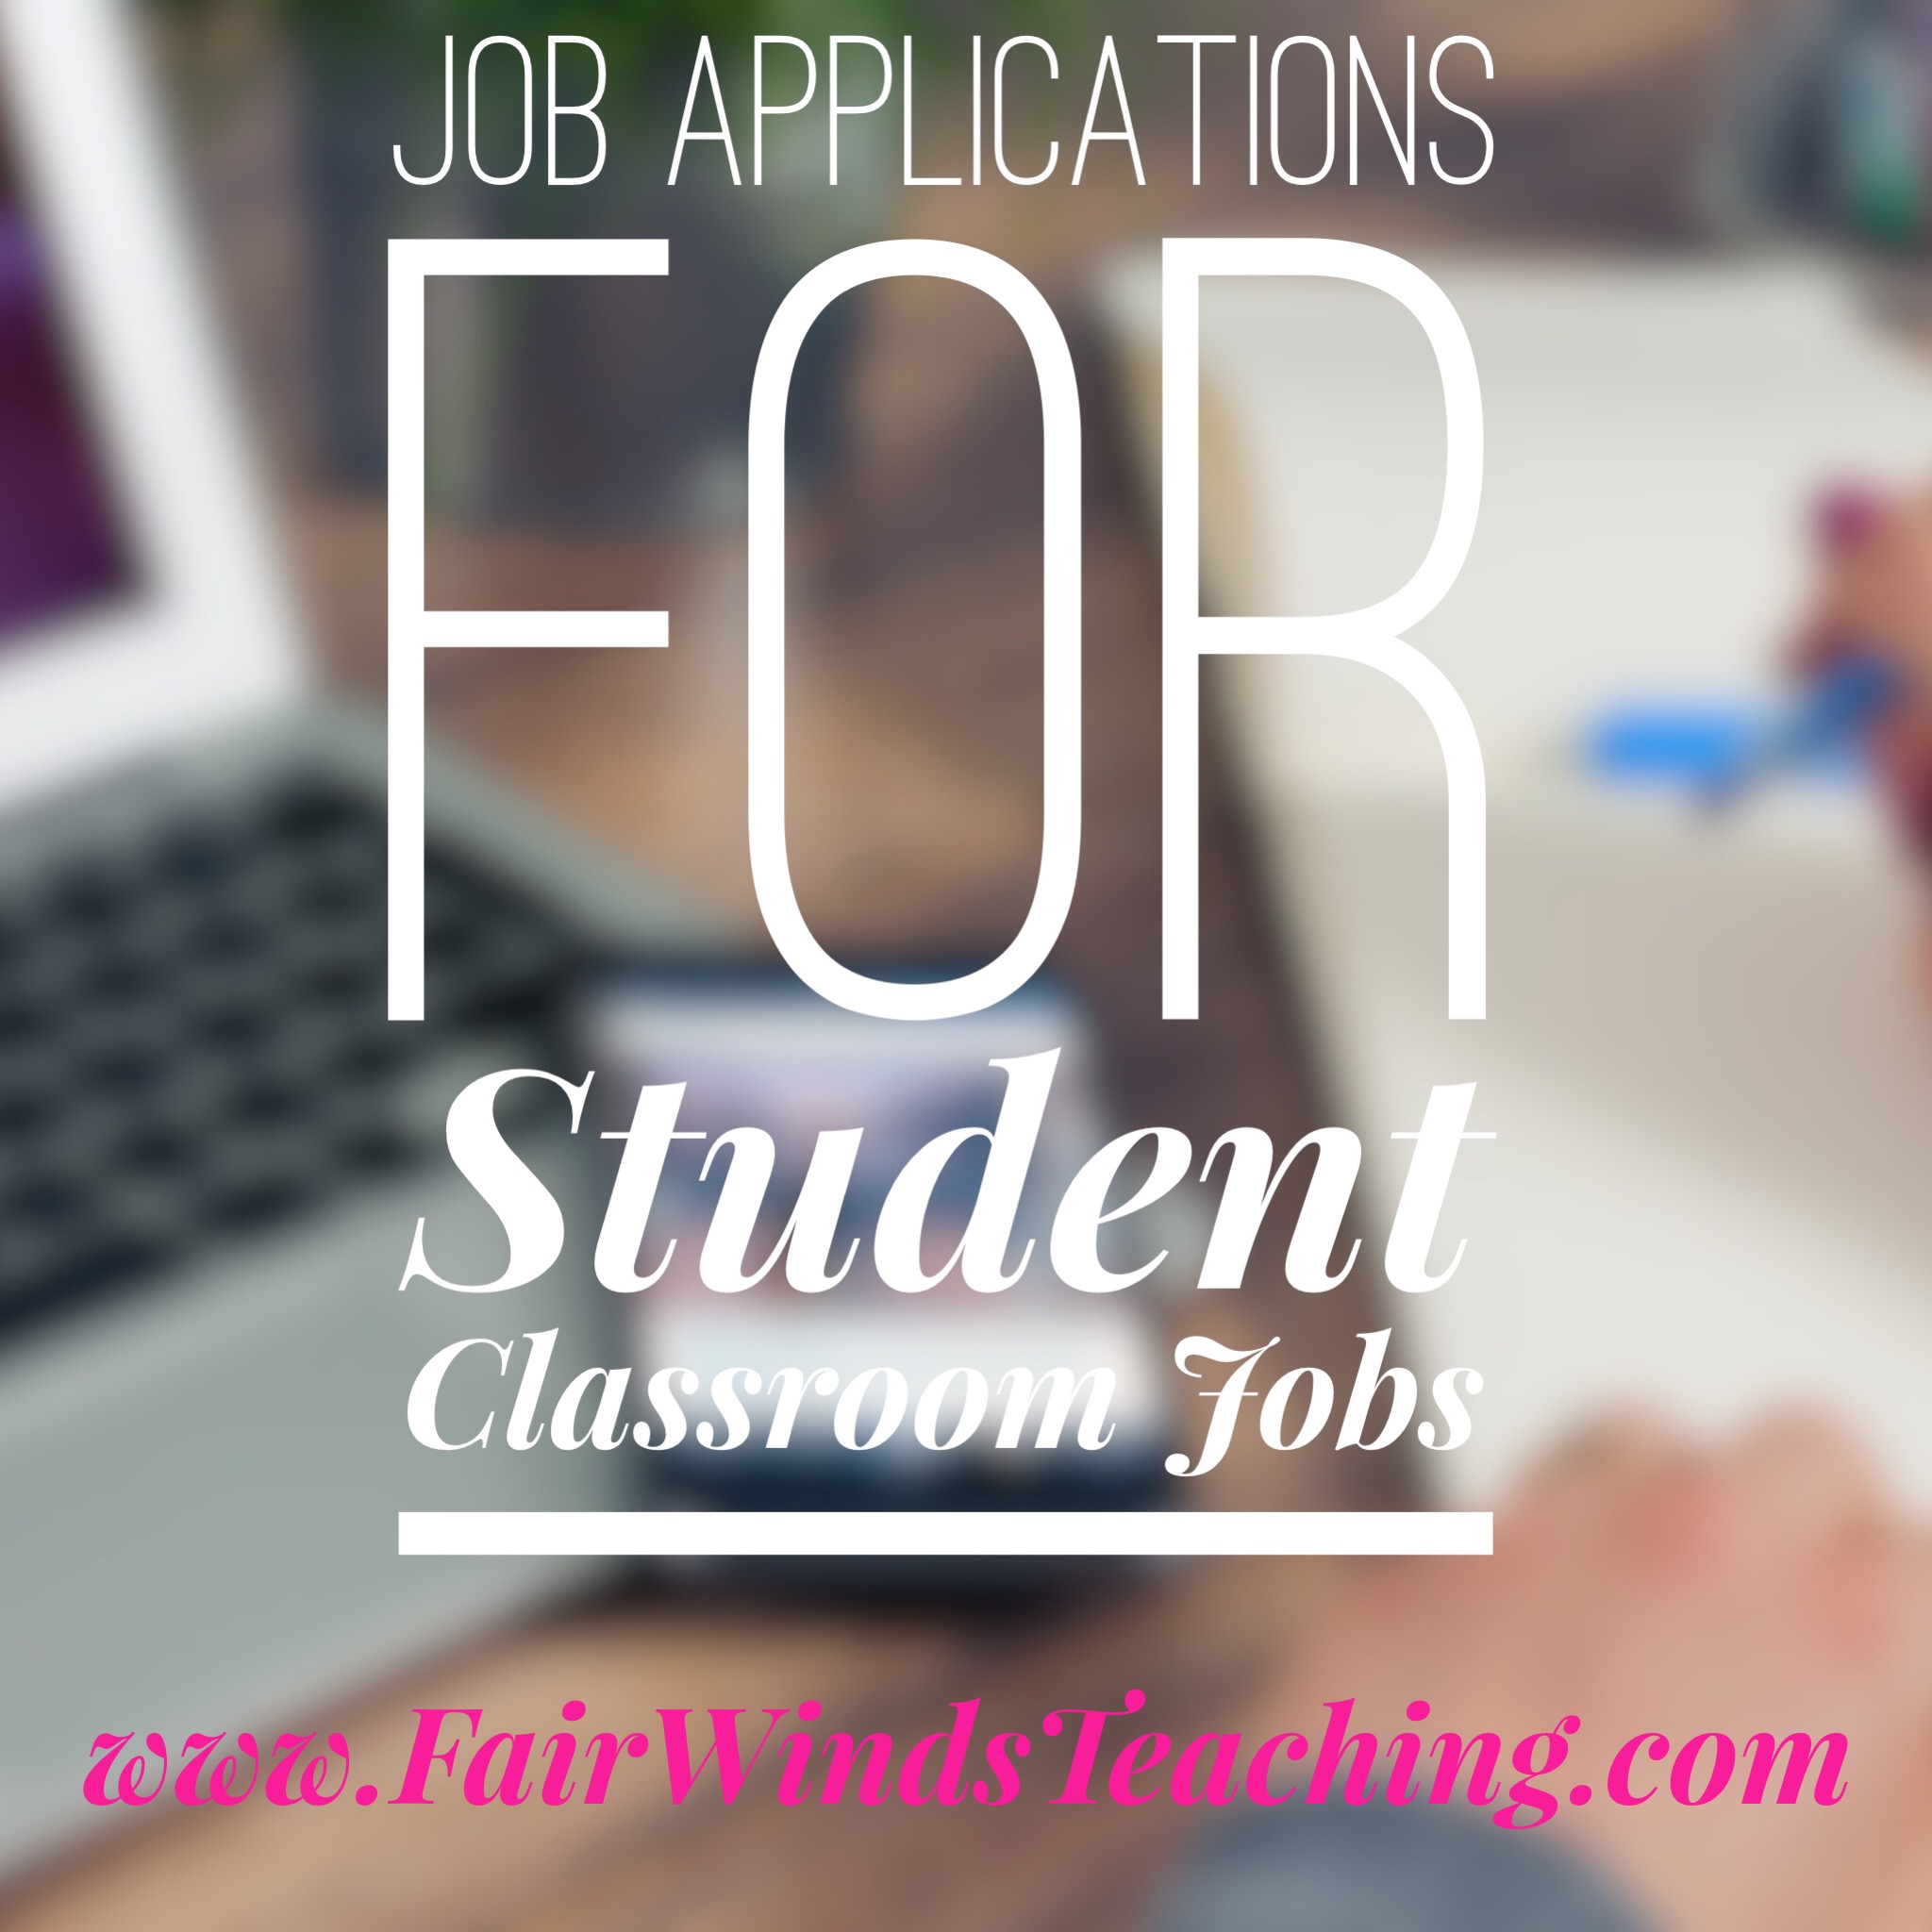 Job Applications for Student Classroom jobs